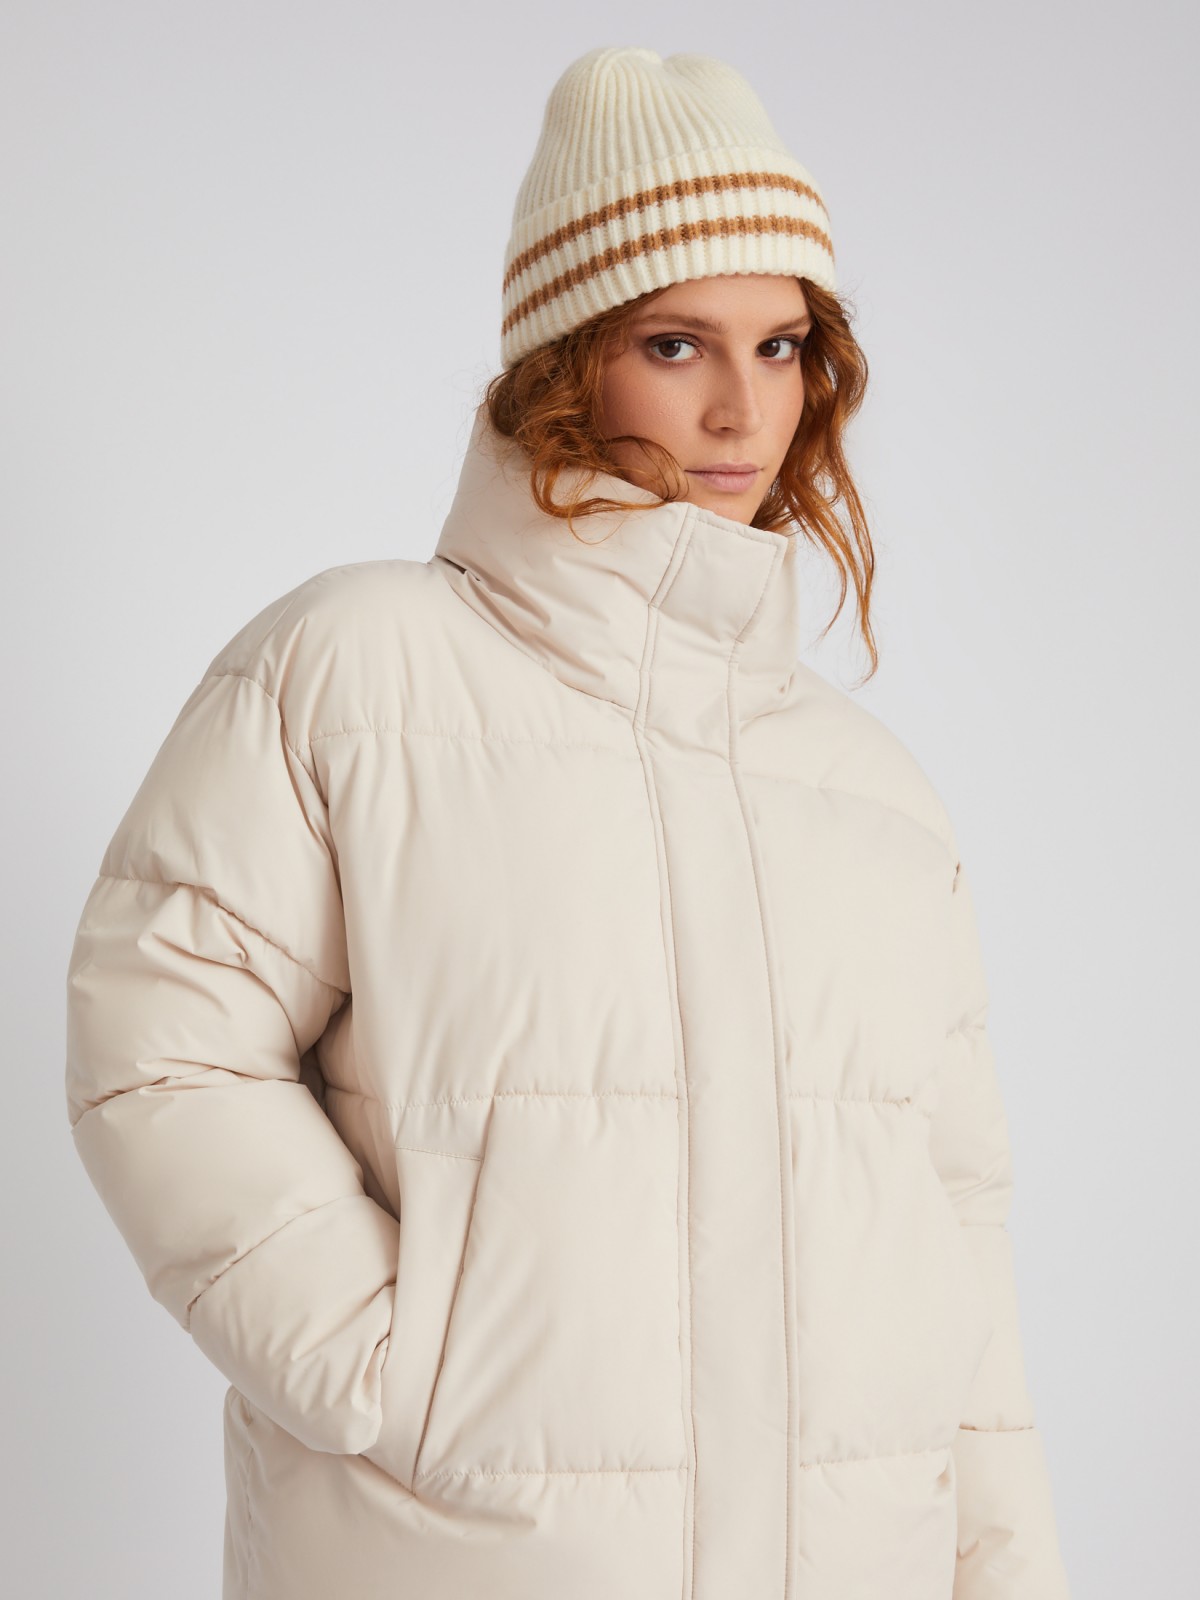 Тёплая стёганая дутая куртка оверсайз силуэта с высоким воротником zolla 023335102074, цвет молоко, размер S - фото 4